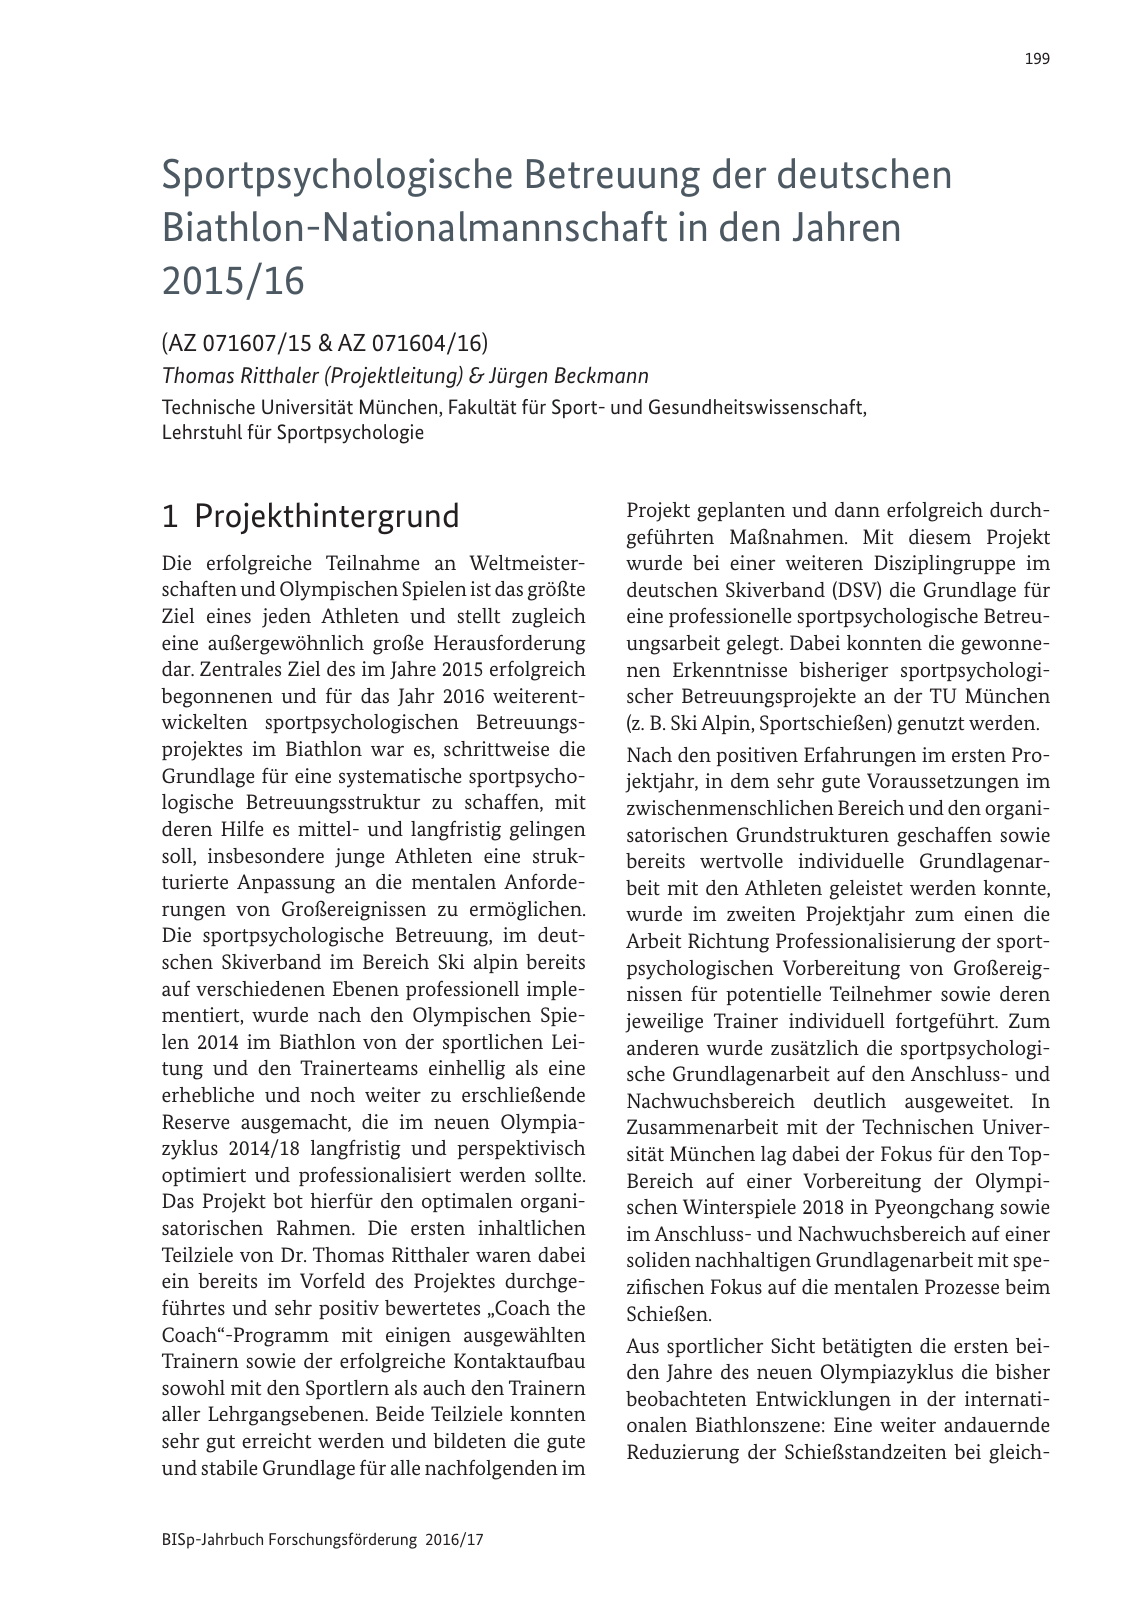 Vorschau BISp-Jahrbuch 2016/2017 Seite 201